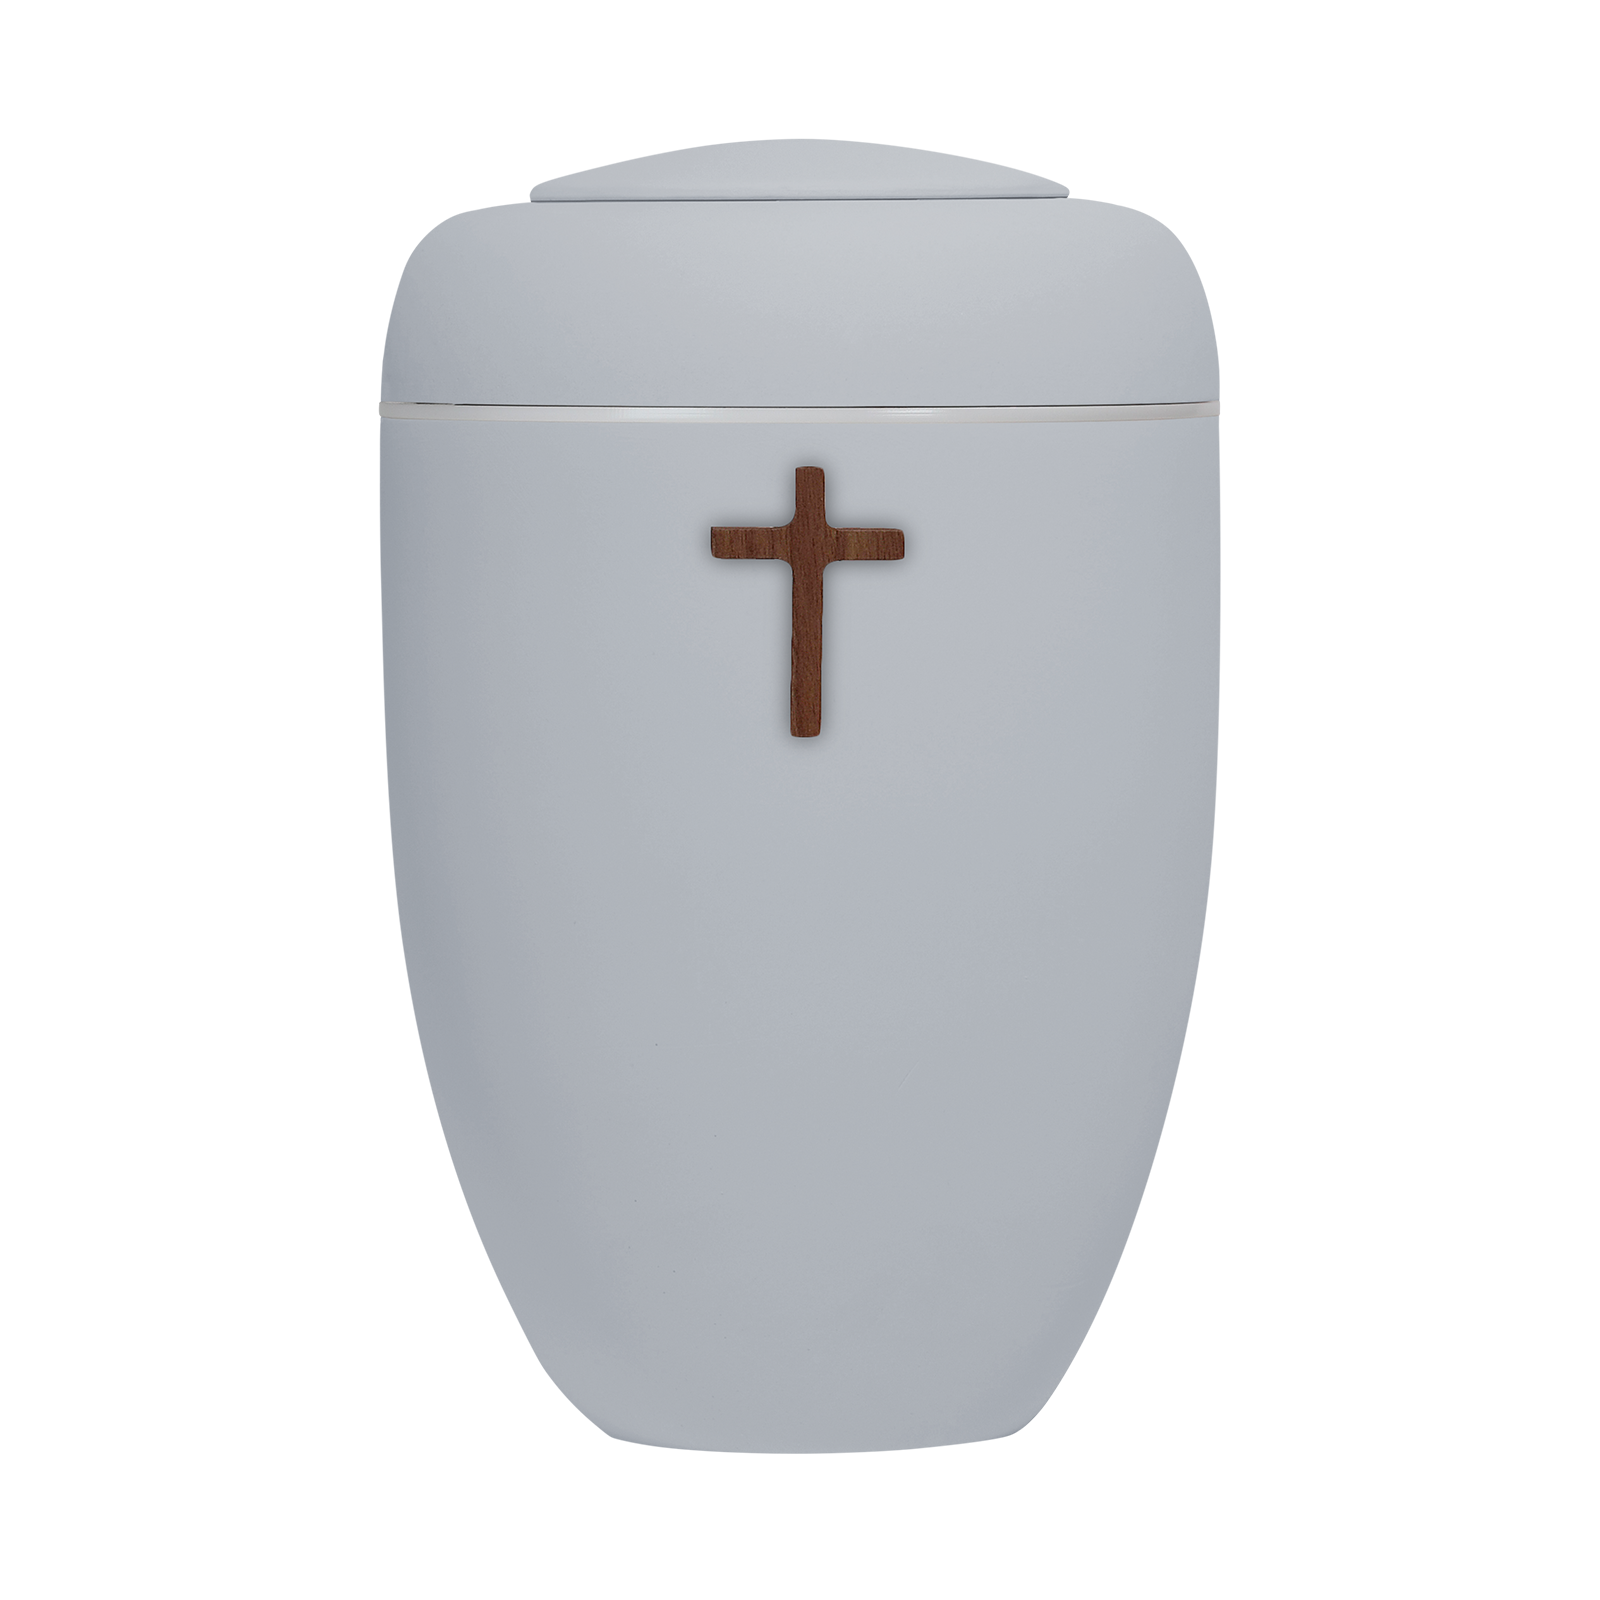 Hellgraue Symbol-Urne mit Holzkreuz und weißer Plexiglasscheibe